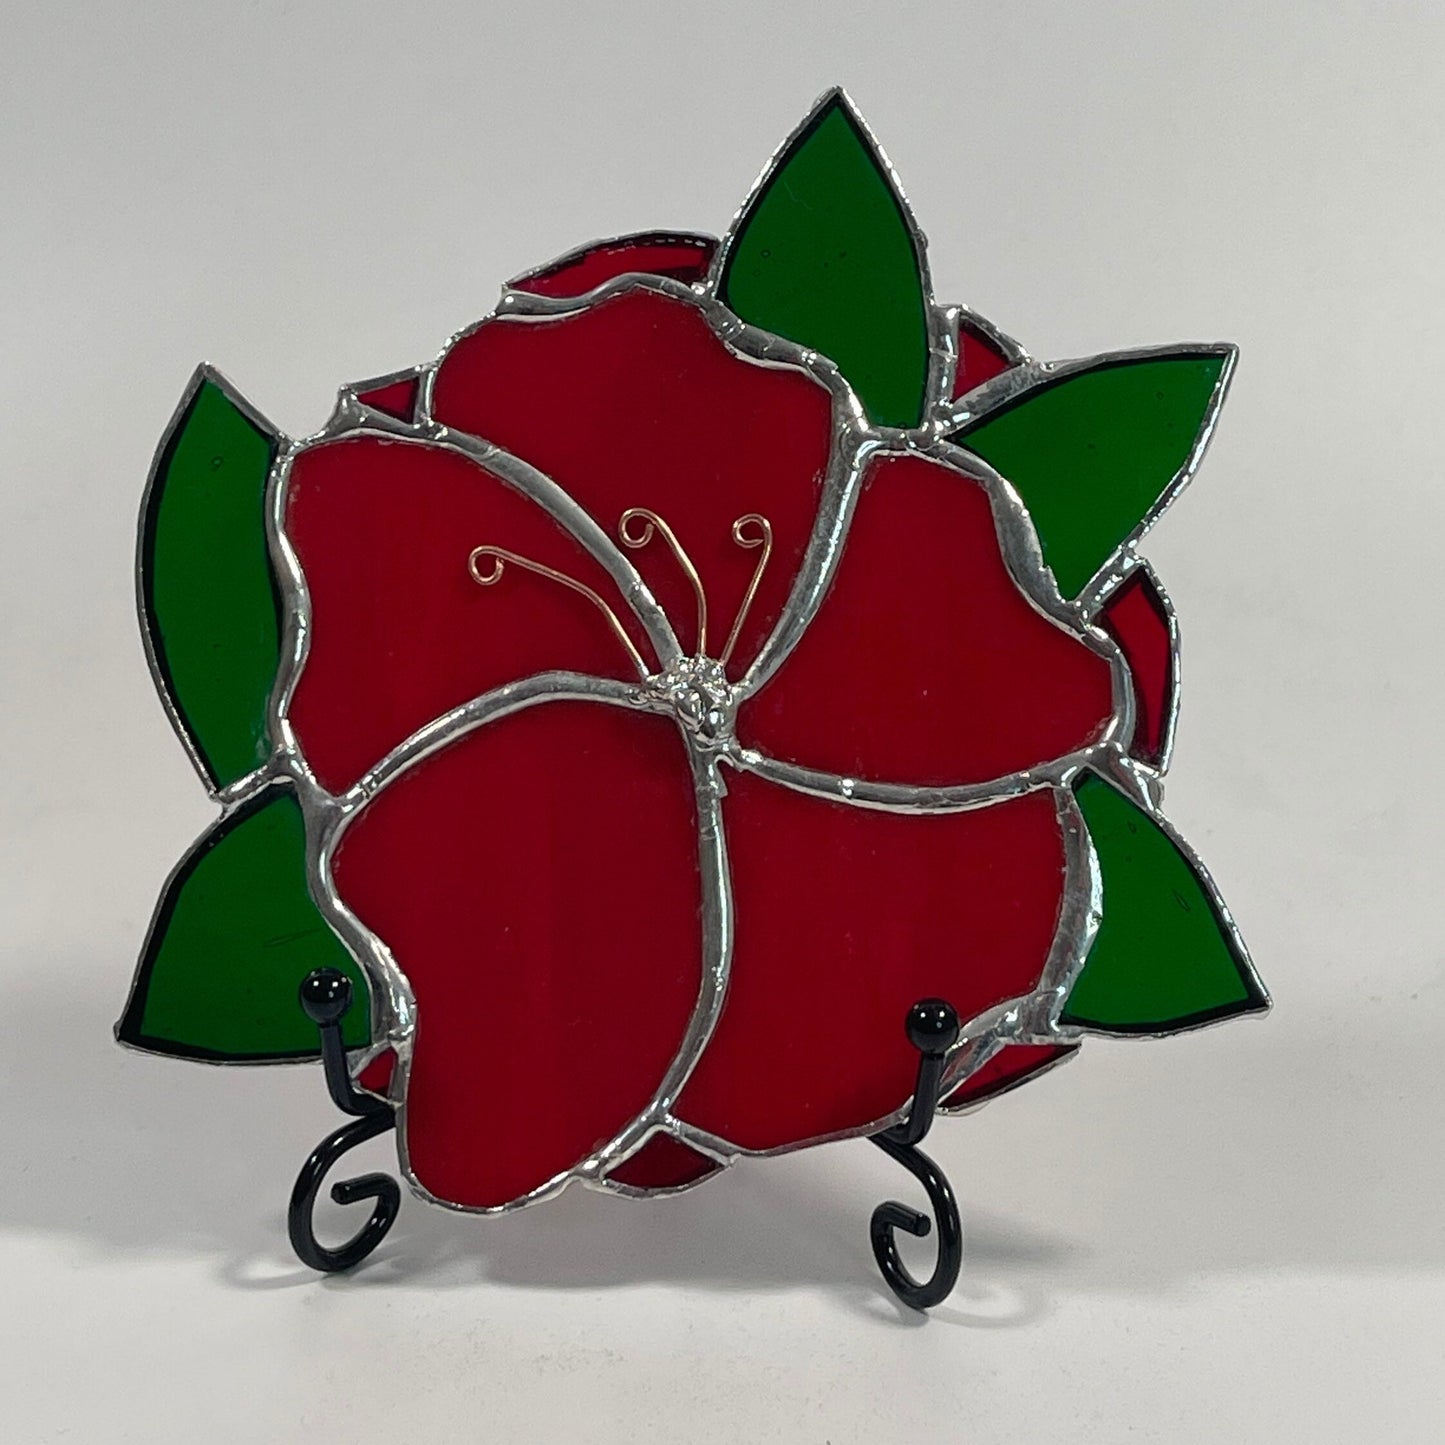 Rosa de vidrieras con soporte para decoración del hogar | Regalos florales únicos para ella.